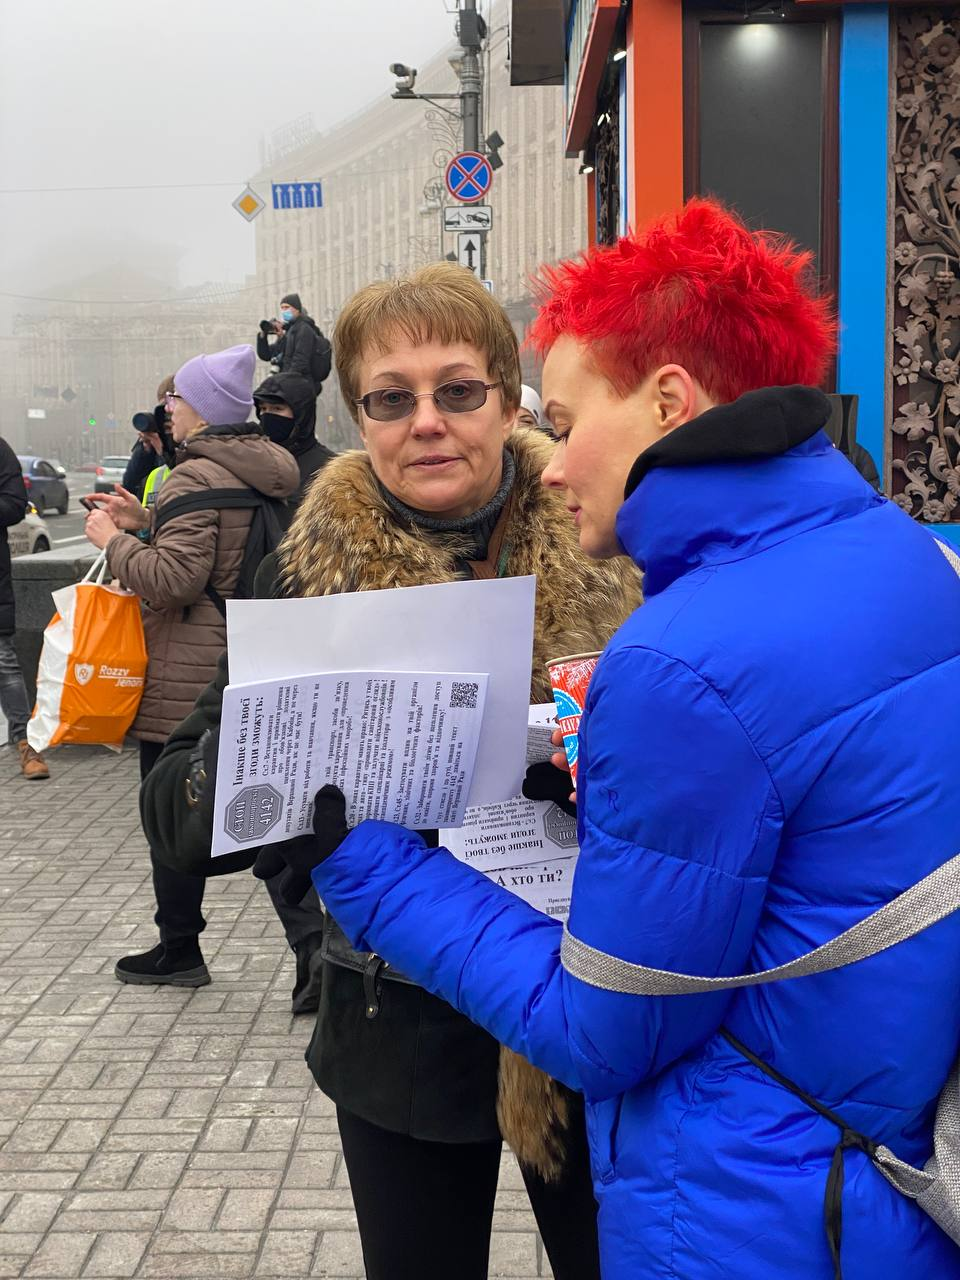 В Киеве проходит марш антивакцинаторов. Фото Страны